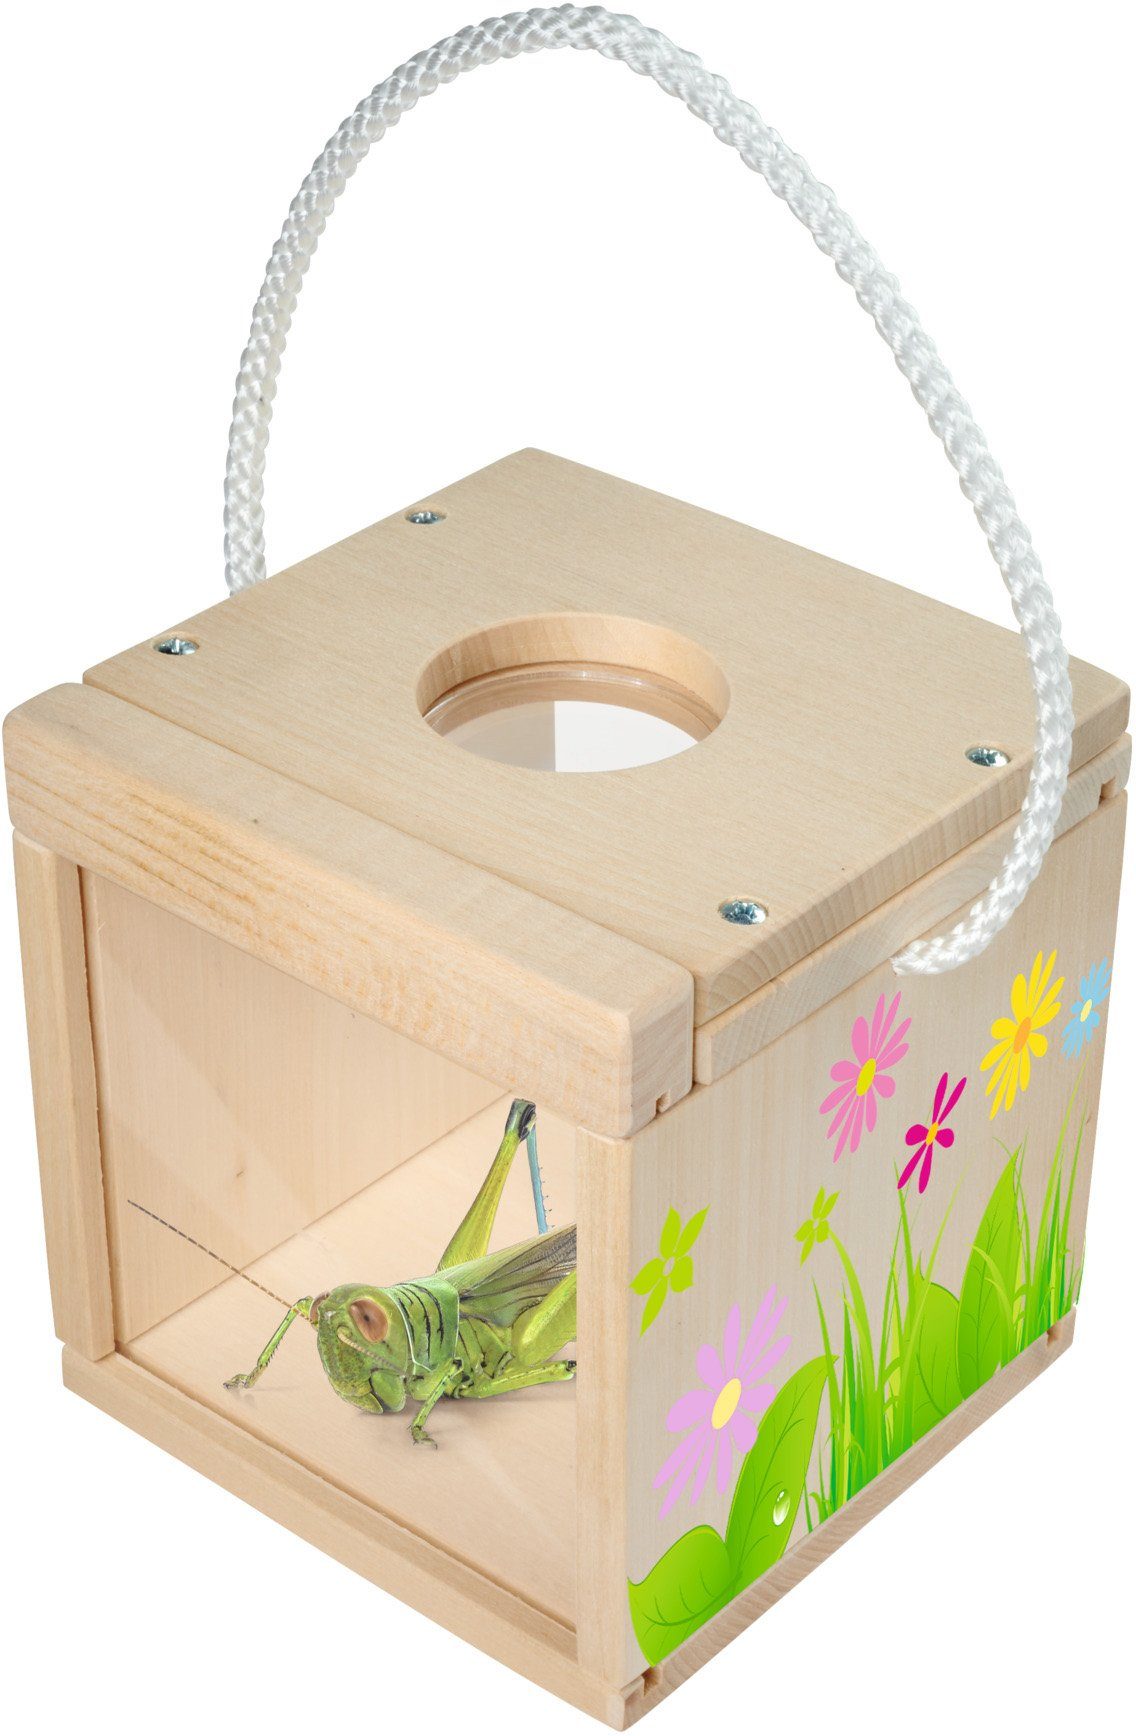 Made Holzspielzeug, Outdoor Insekten Europe Eichhorn Kreativset und Beobachtung, Zum in Zusammenbauen Bemalen;